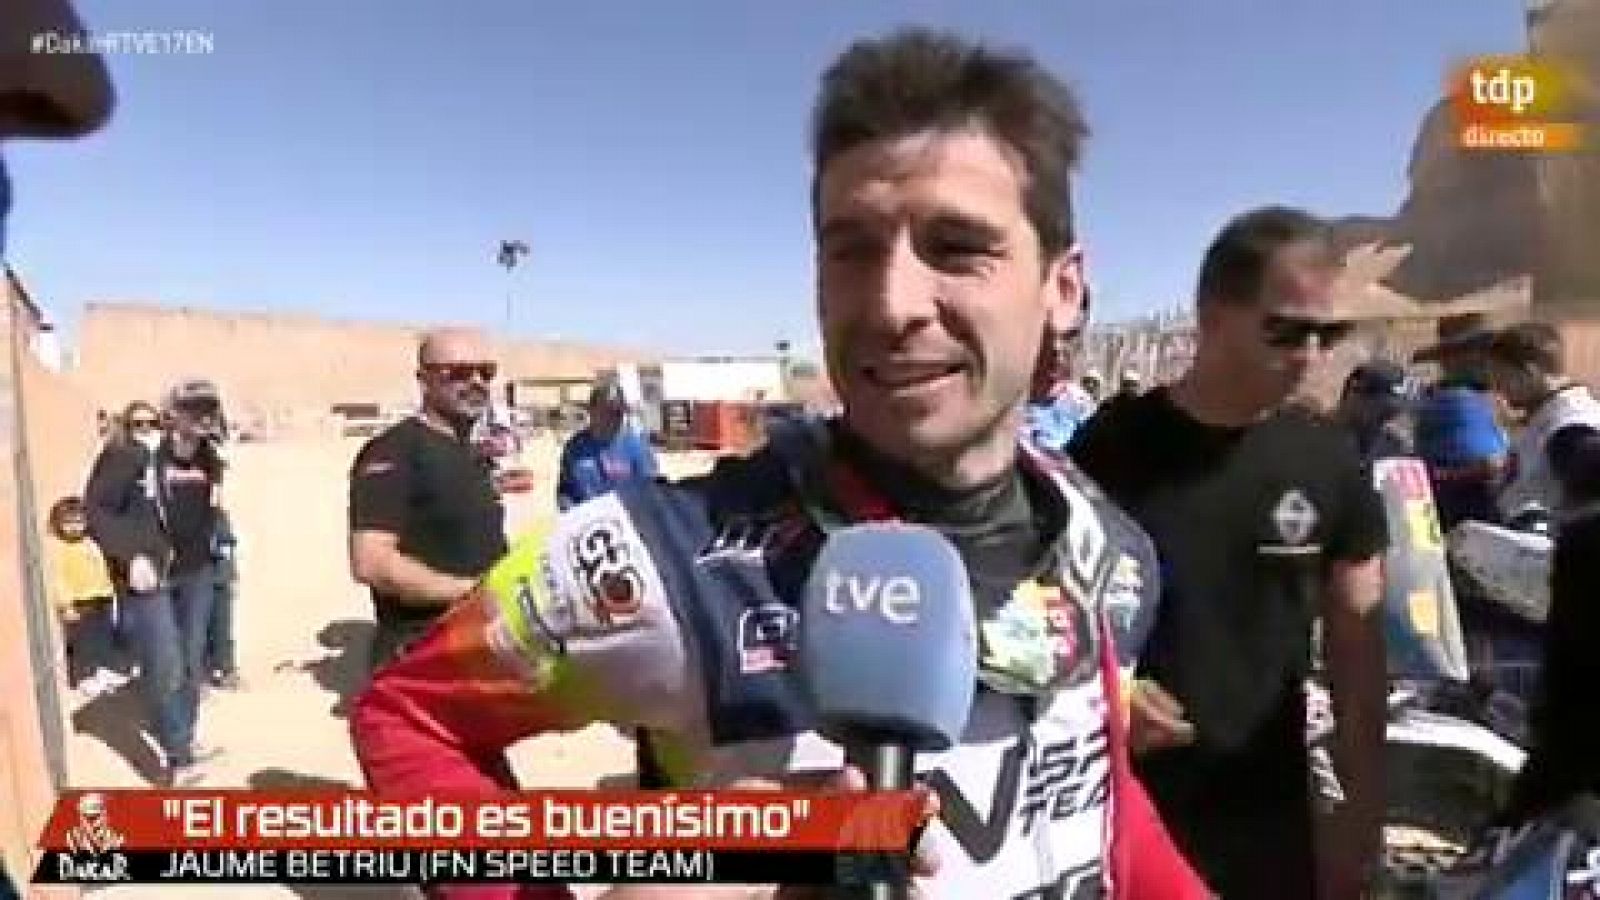 Jaume Betriu, mejor debutante en motos: "Estoy feliz"